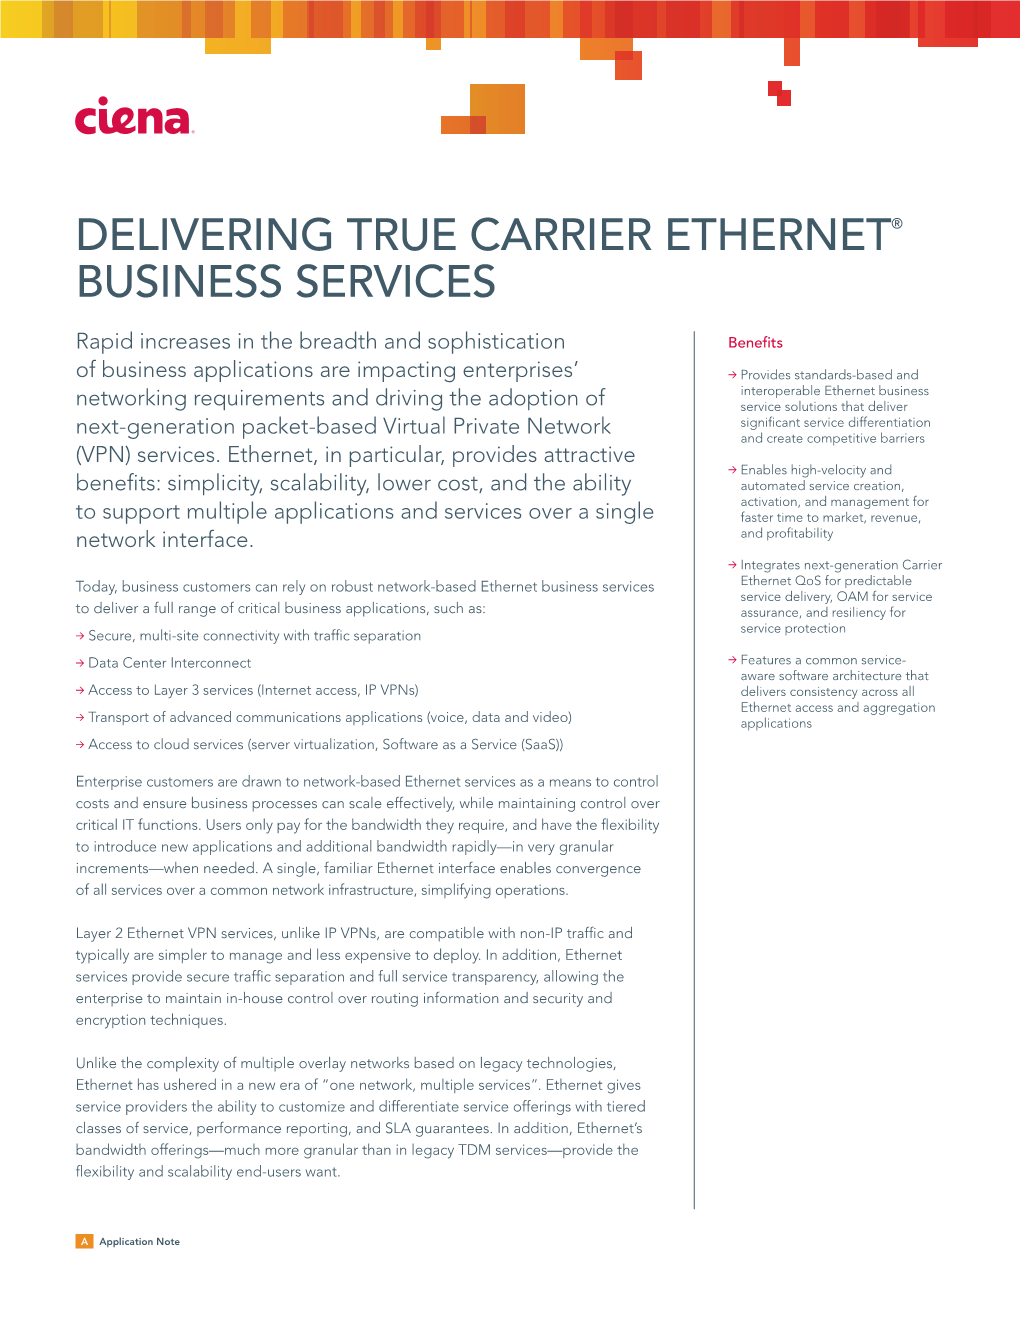 Delivering True Carrier Ethernet Business Services